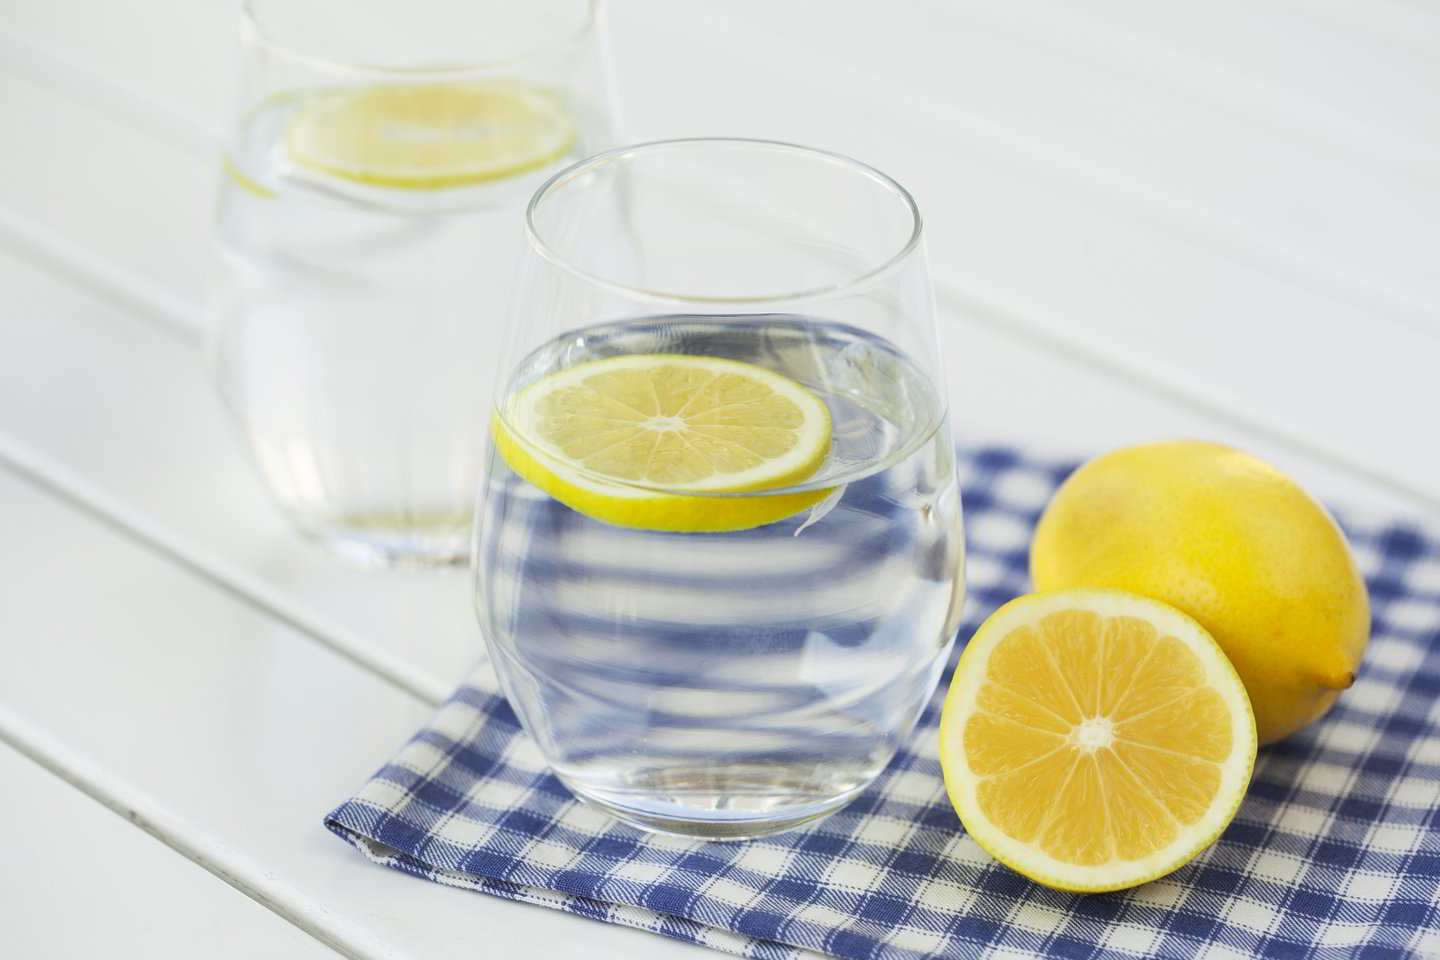  Vandenį su citrina naudinga gerti ir rytą, ir vakare. <br> 123rf.com nuotr. 